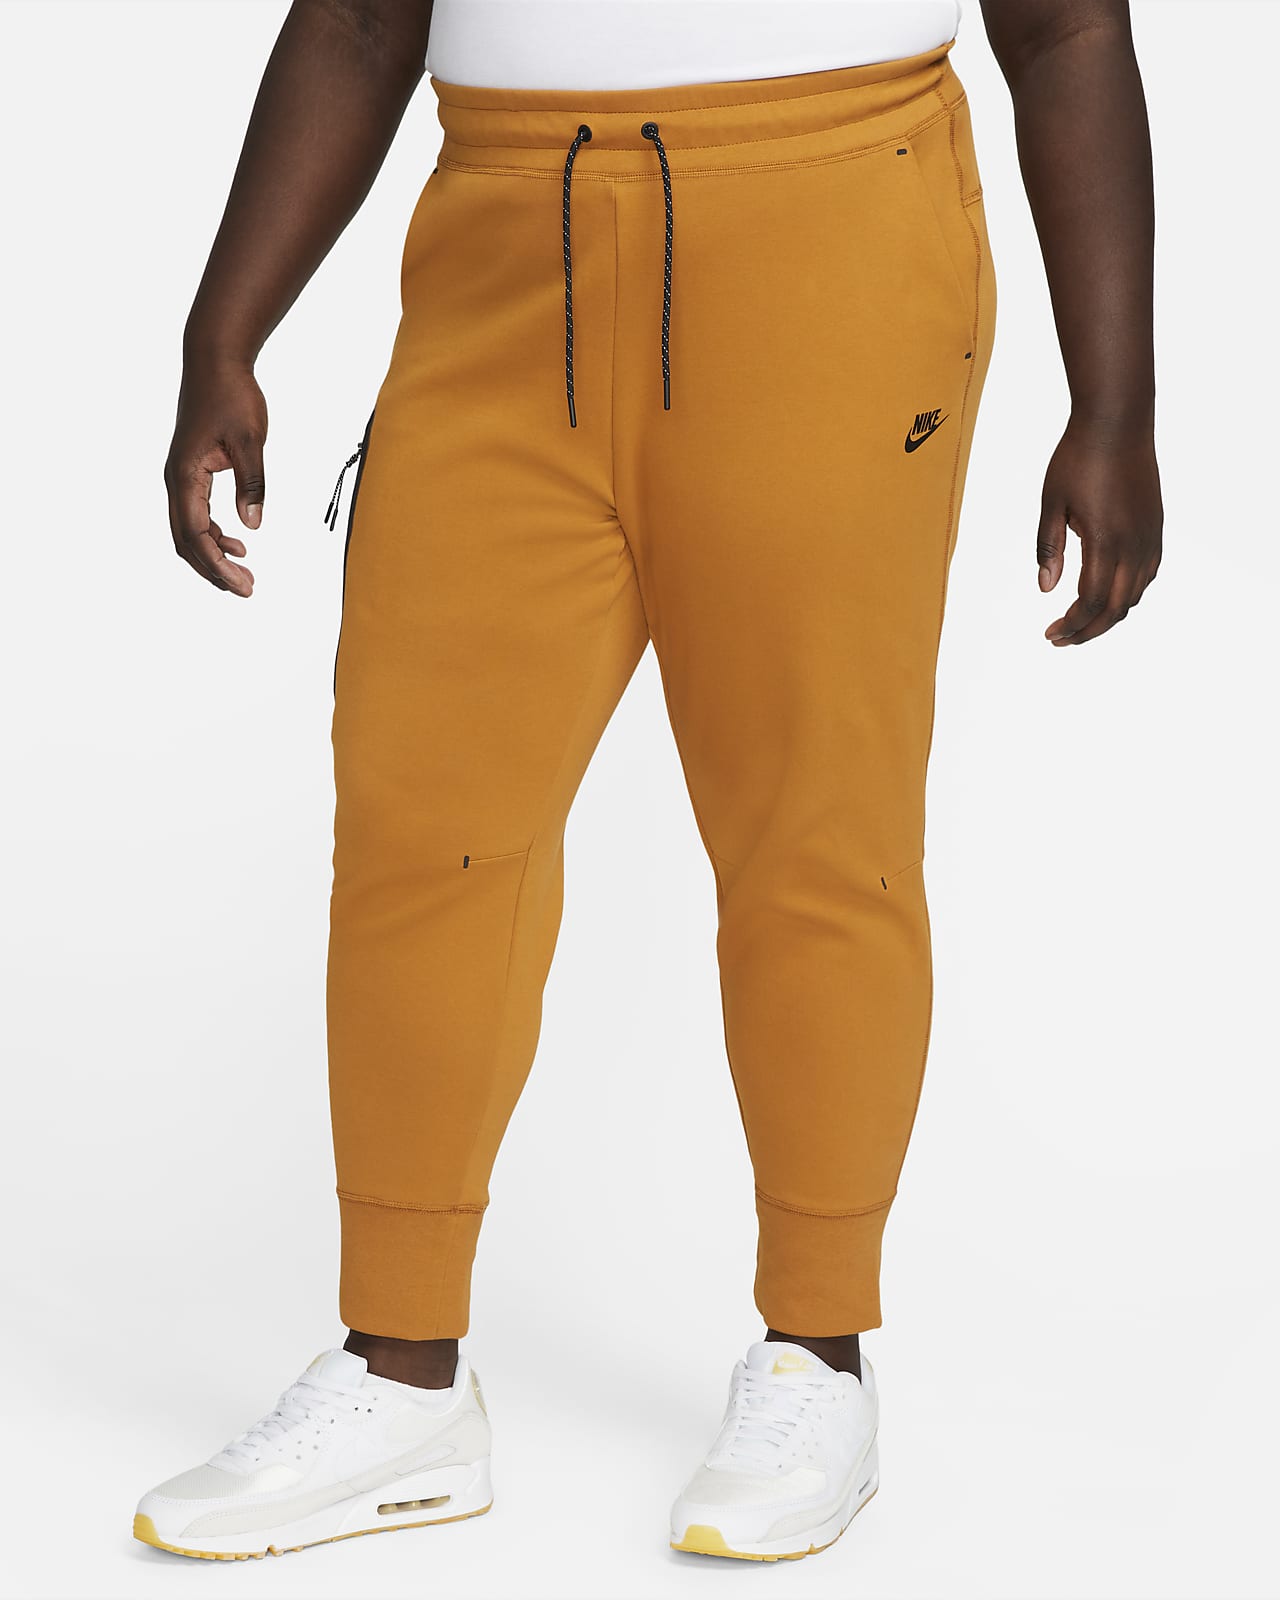 homoseksuel Stole på Encyclopedia Nike Sportswear Tech Fleece Women's Pants (Plus Size). Nike.com